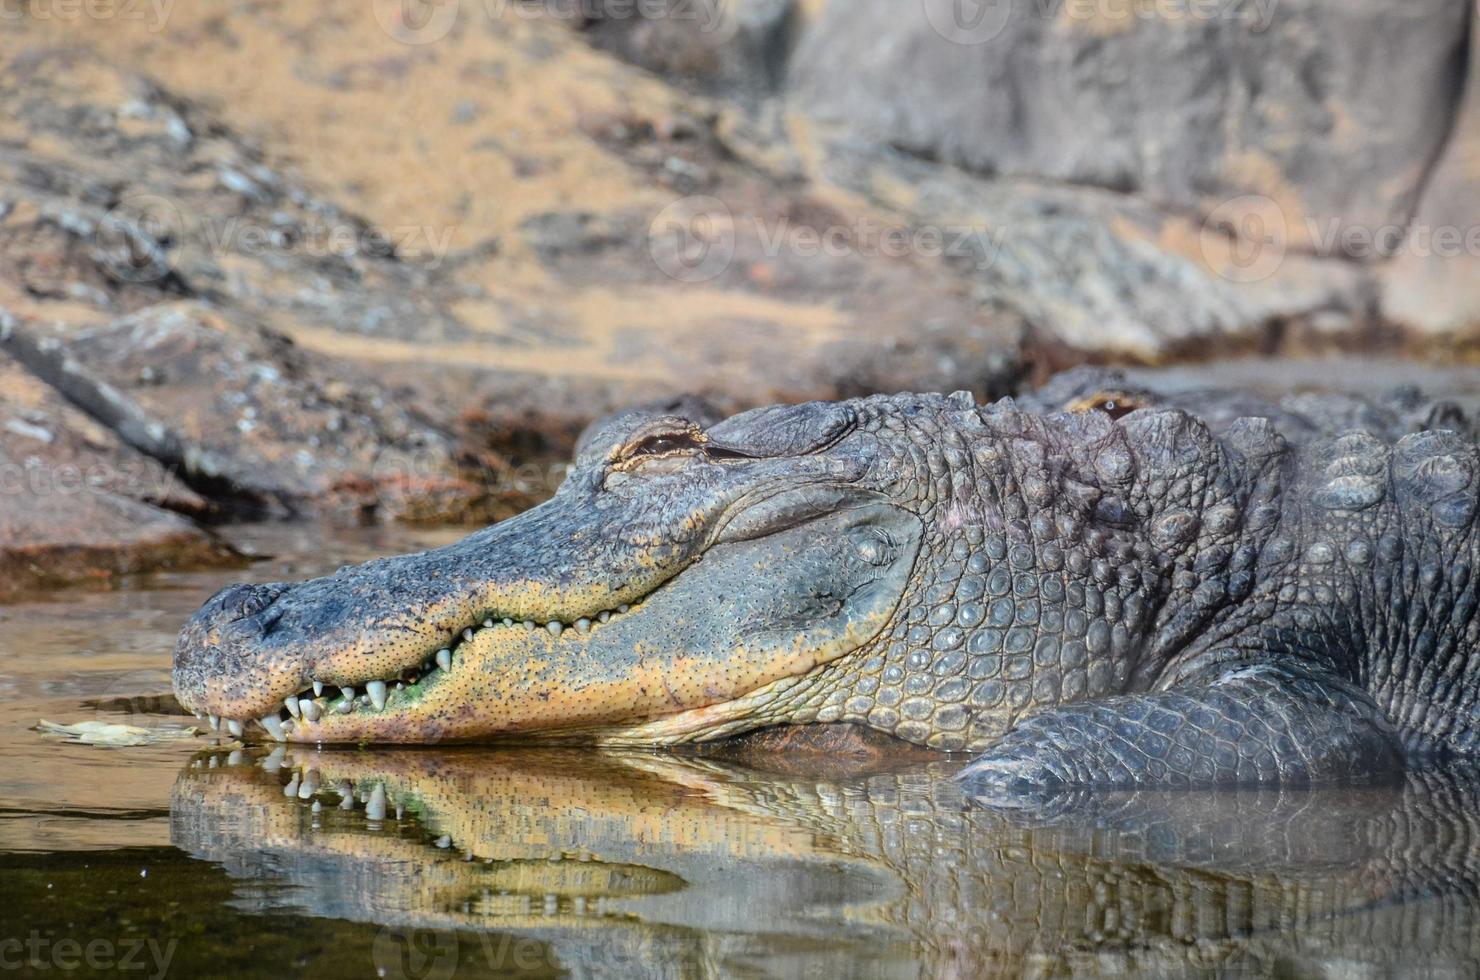 A large crocodile photo